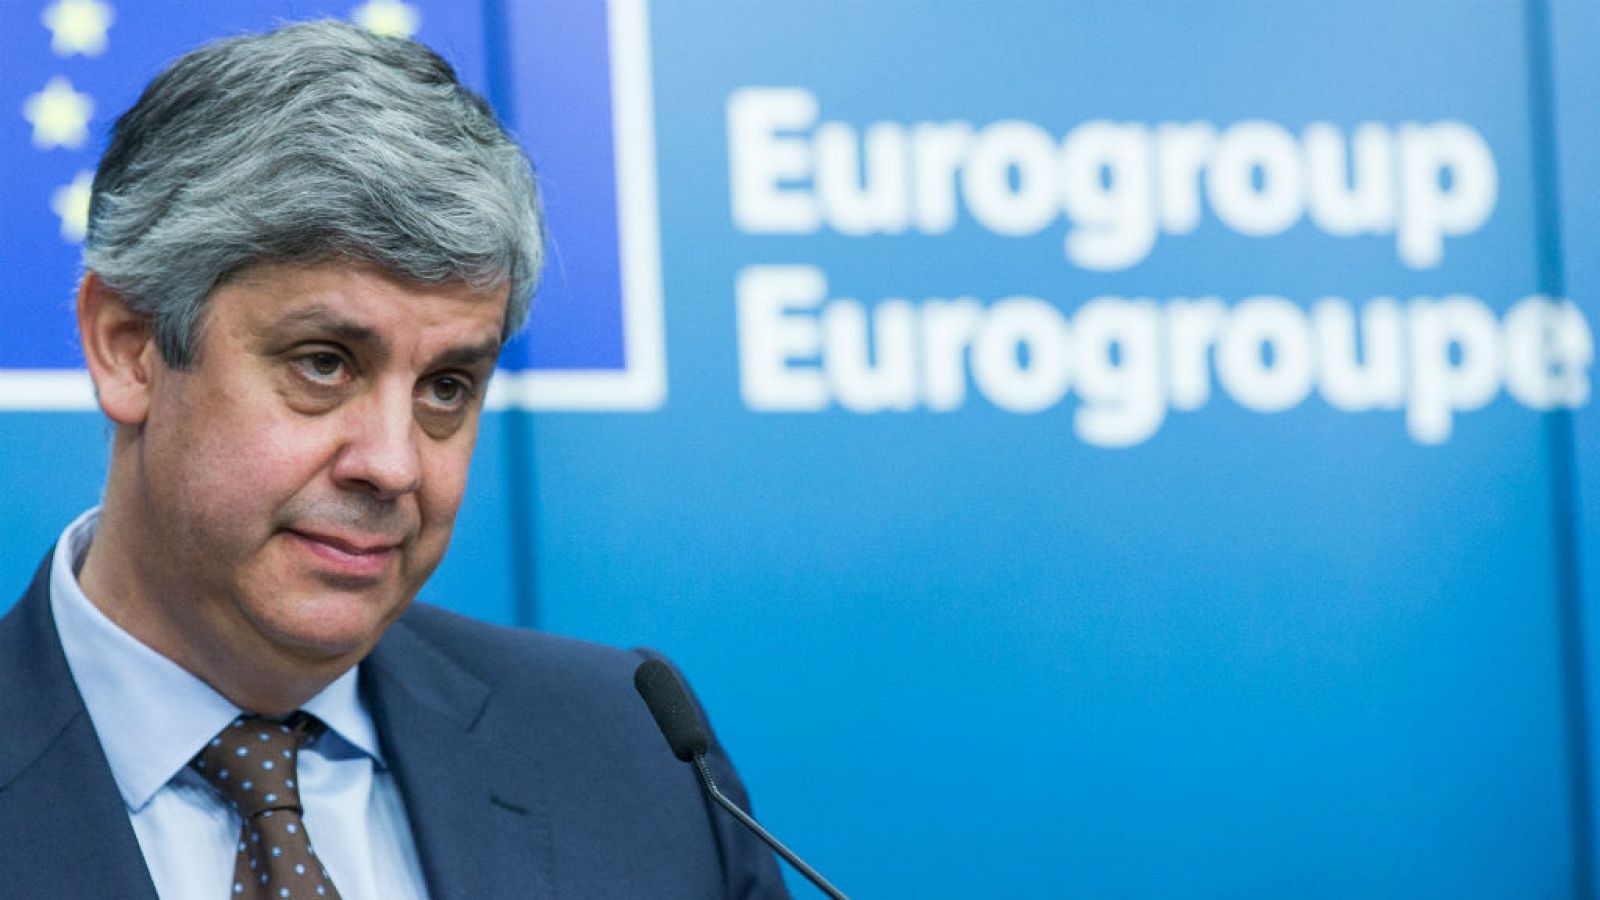  Las mañanas de RNE - Salvador Llaudes: "La llegada de Centeno al Eurogrupo reequilibra la balanza ideológica" - Escuchar ahora 